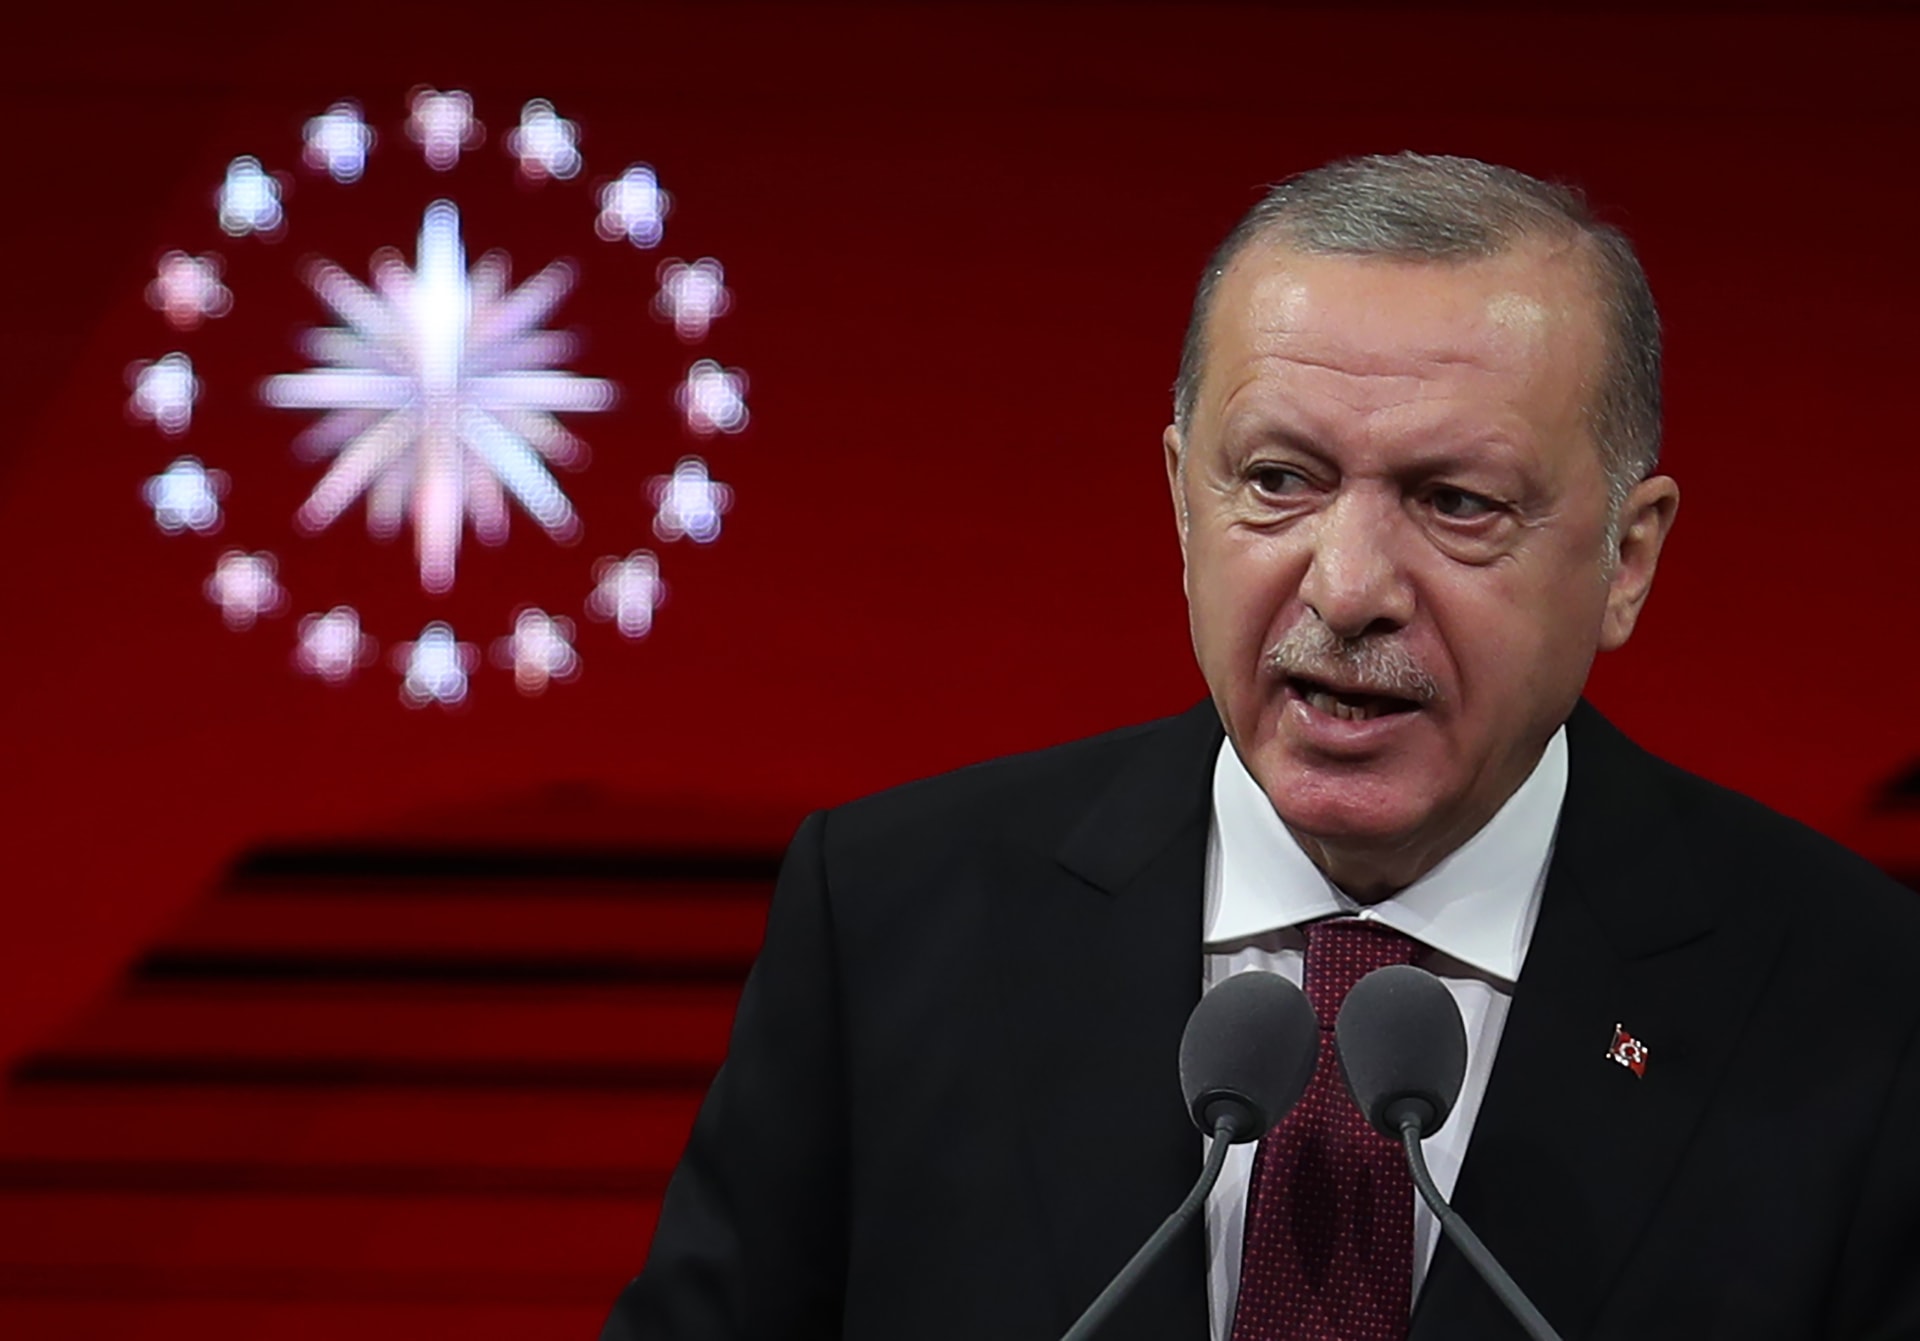 أردوغان: "جهات معادية" لتركيا تسعى لمنع نهضتها.. ونكافح في سوريا وليبيا والمتوسط